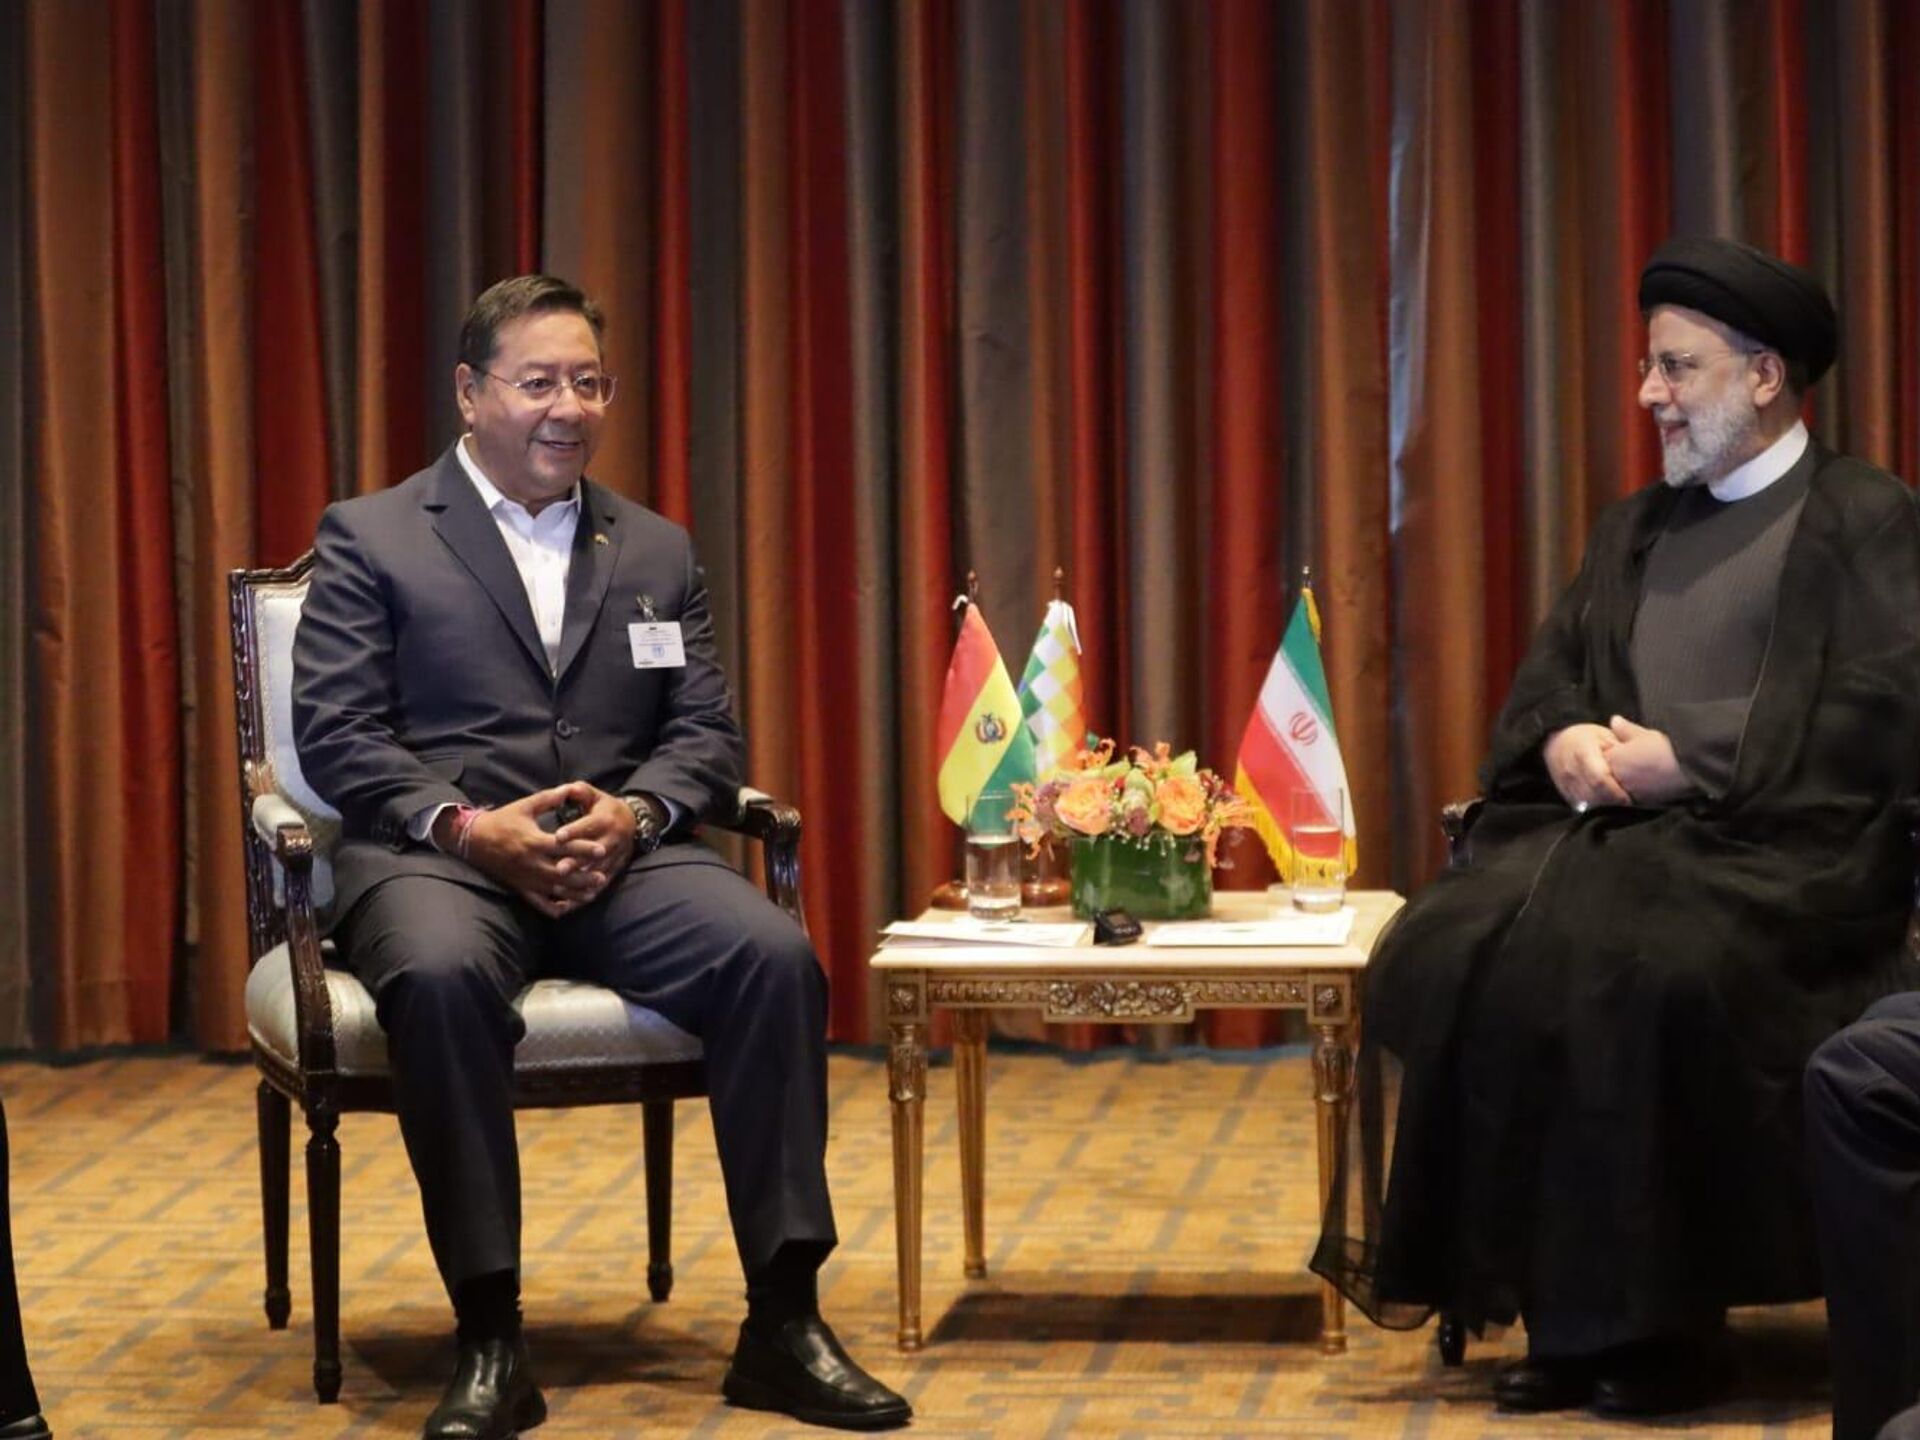 Presidentes de Bolivia e Irán se reúnen para evaluar plan estratégico de cooperación | Fotos - 20.09.2022, Sputnik Mundo